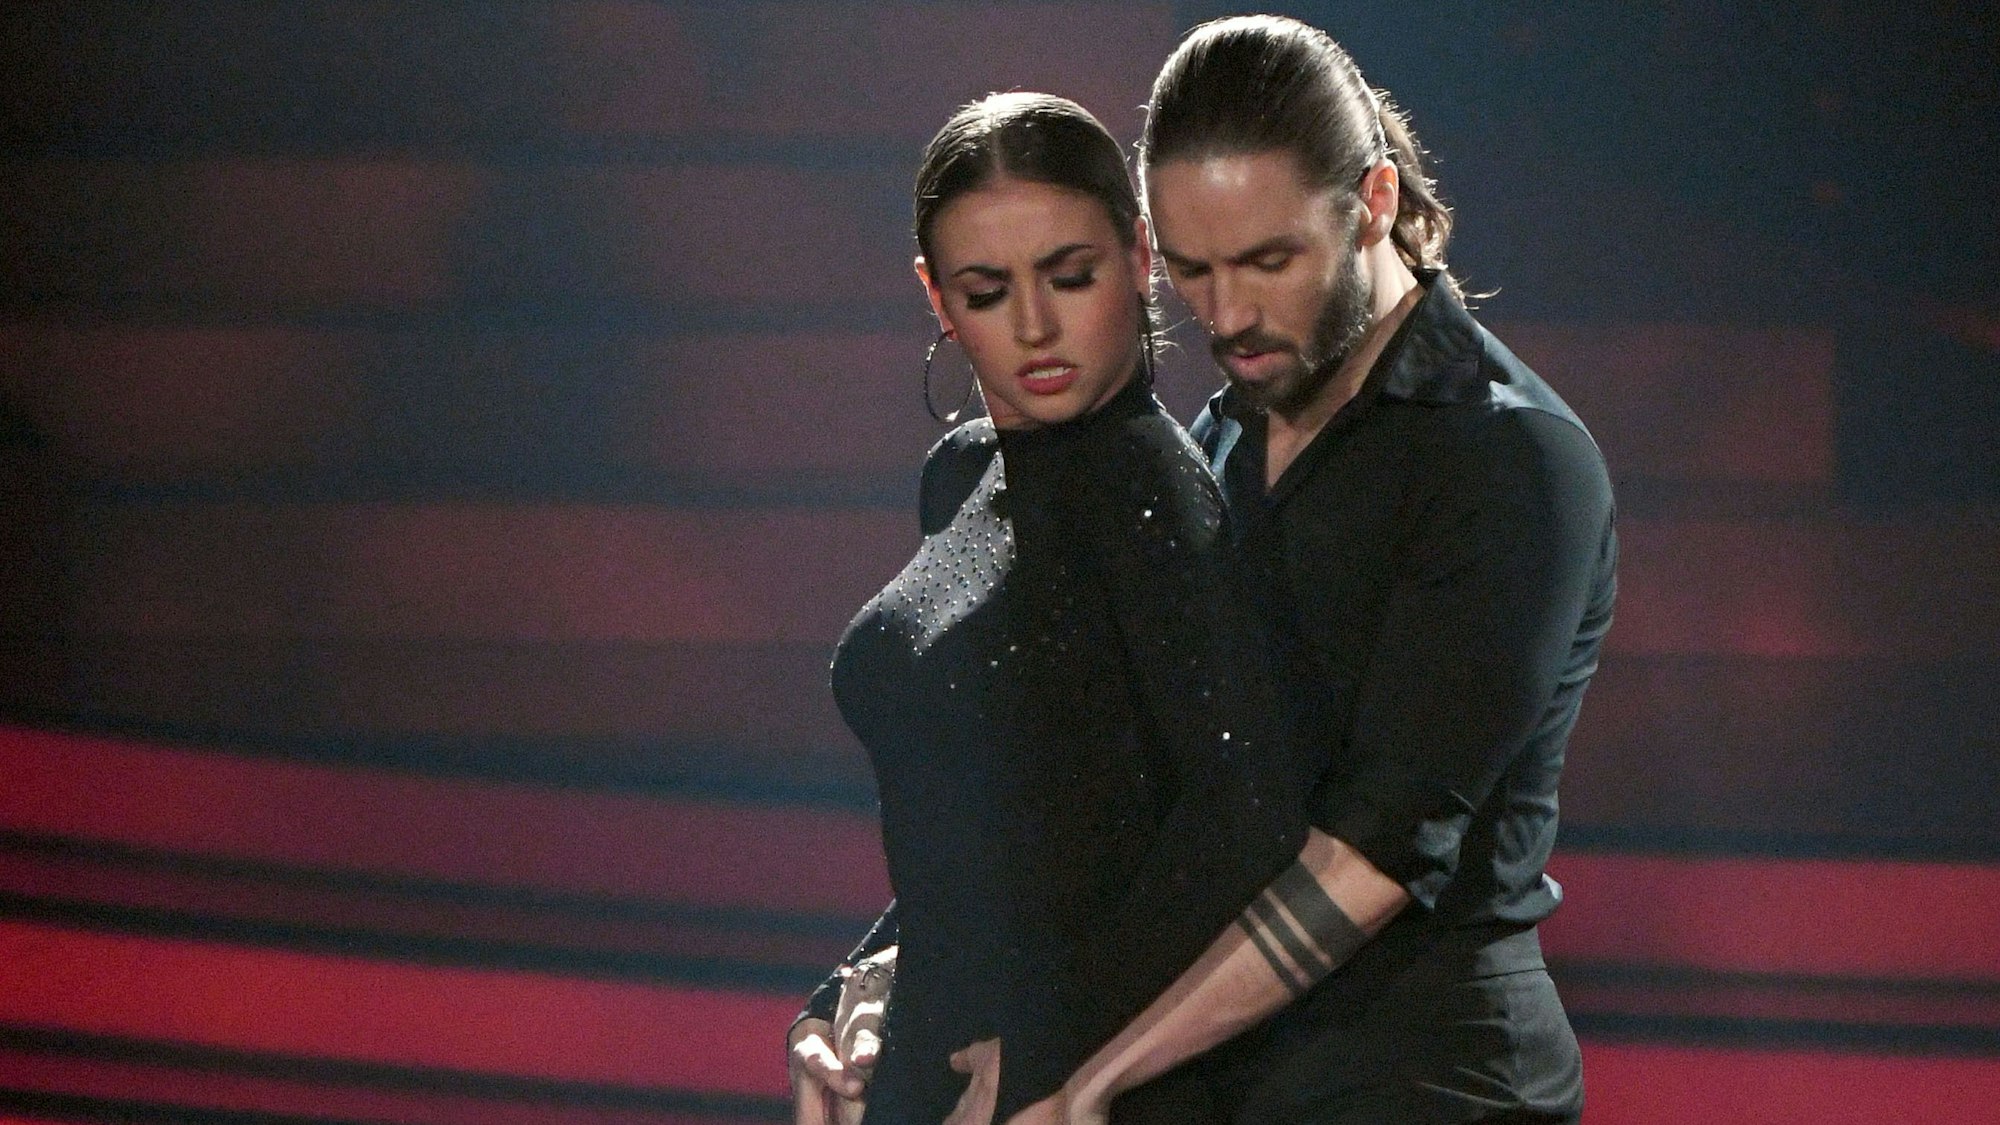 Gil Ofarim und die Tänzerin Ekaterina Leonova tanzen bei der Finalshow in Köln. Beide sind in Schwarz gekleidet.